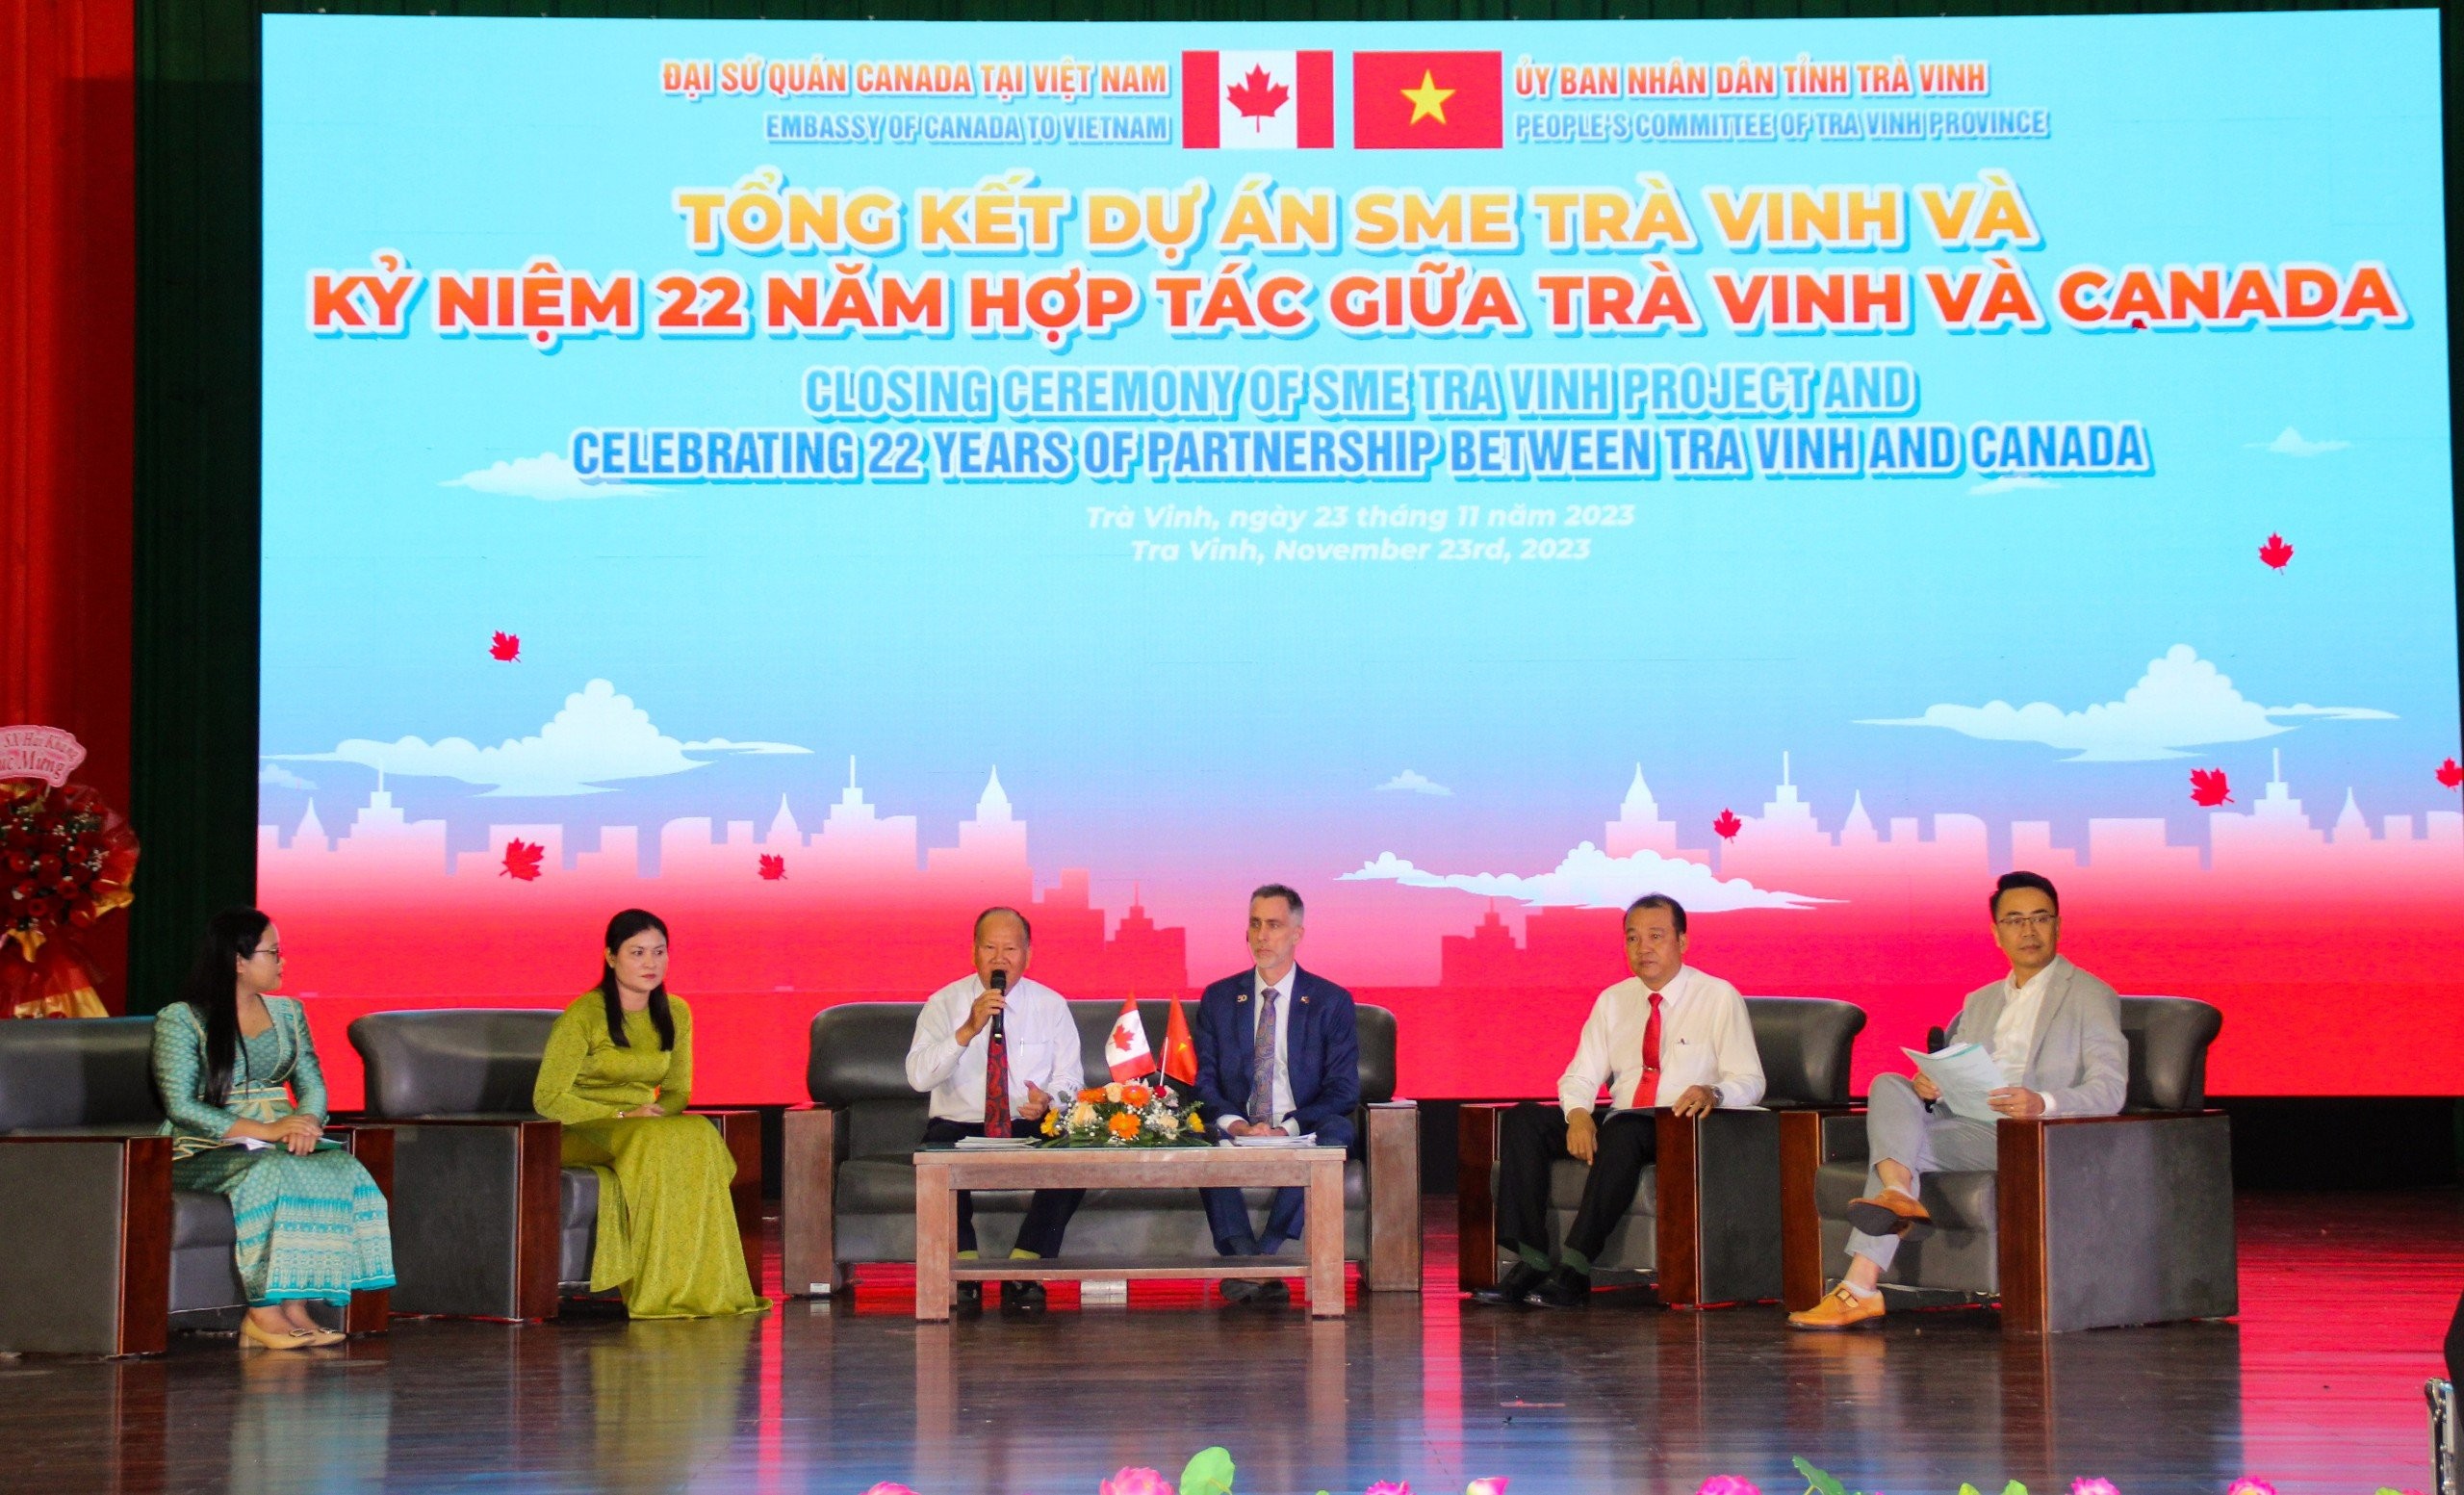 phiên thảo luận về dấu ấn của Canada trong phát triển kinh tế và xã hội tại tỉnh Trà Vinh và những cơ hội hợp tác phát triển trong tương lai.